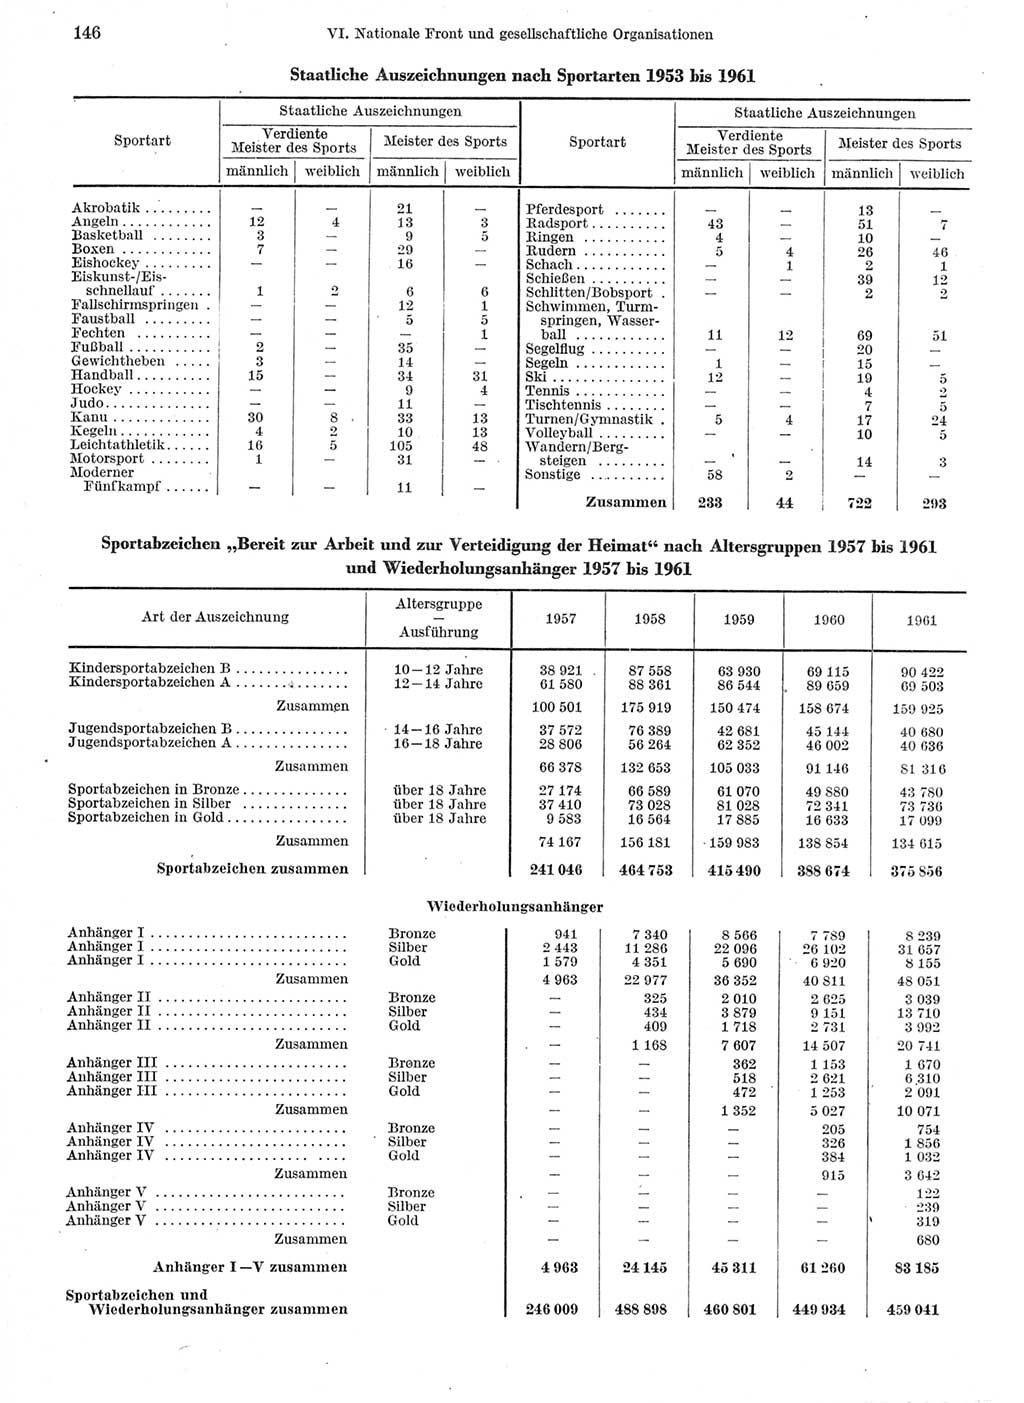 Statistisches Jahrbuch der Deutschen Demokratischen Republik (DDR) 1962, Seite 146 (Stat. Jb. DDR 1962, S. 146)